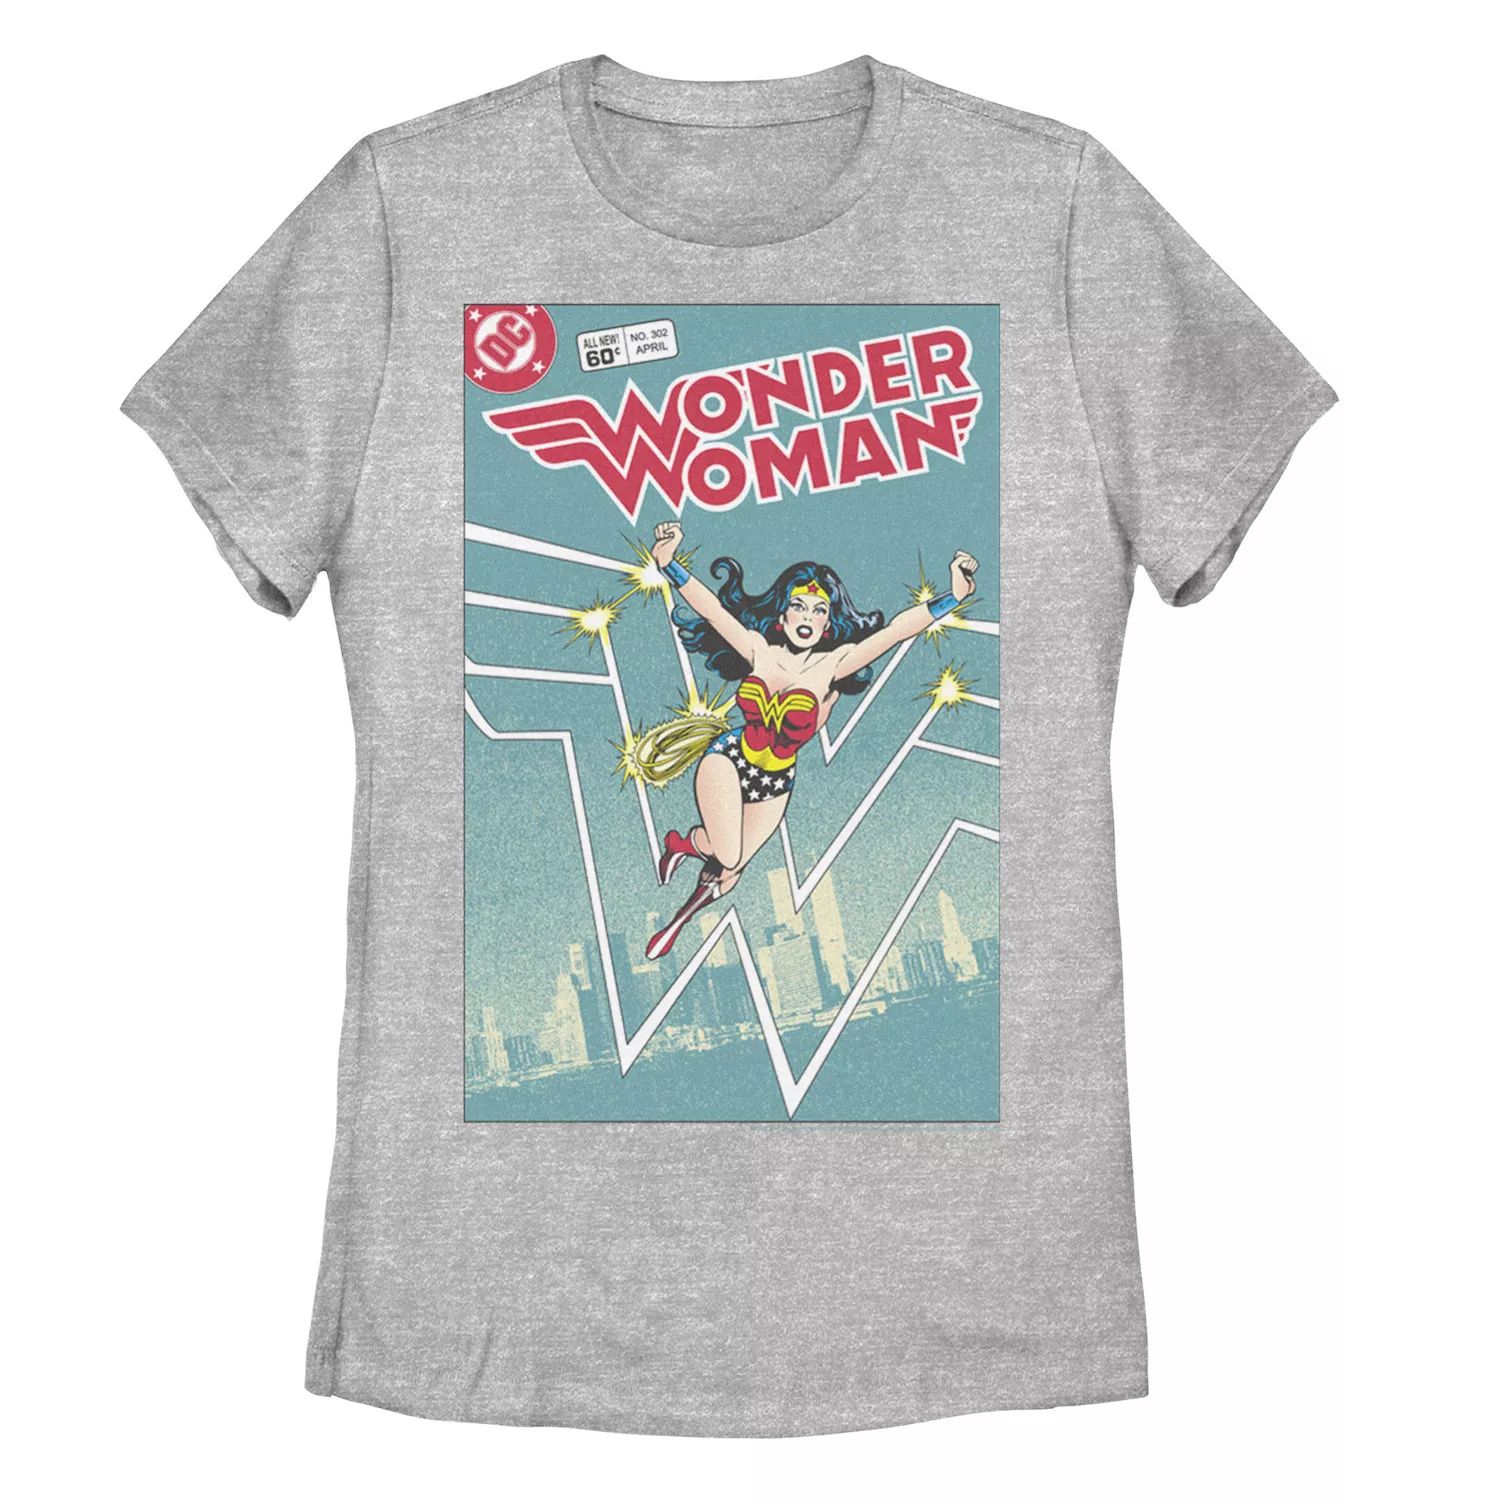 Детская футболка с рисунком «Чудо-женщина» в стиле DC Comics в стиле ретро Licensed Character детская футболка с рисунком чудо женщина dc comics licensed character